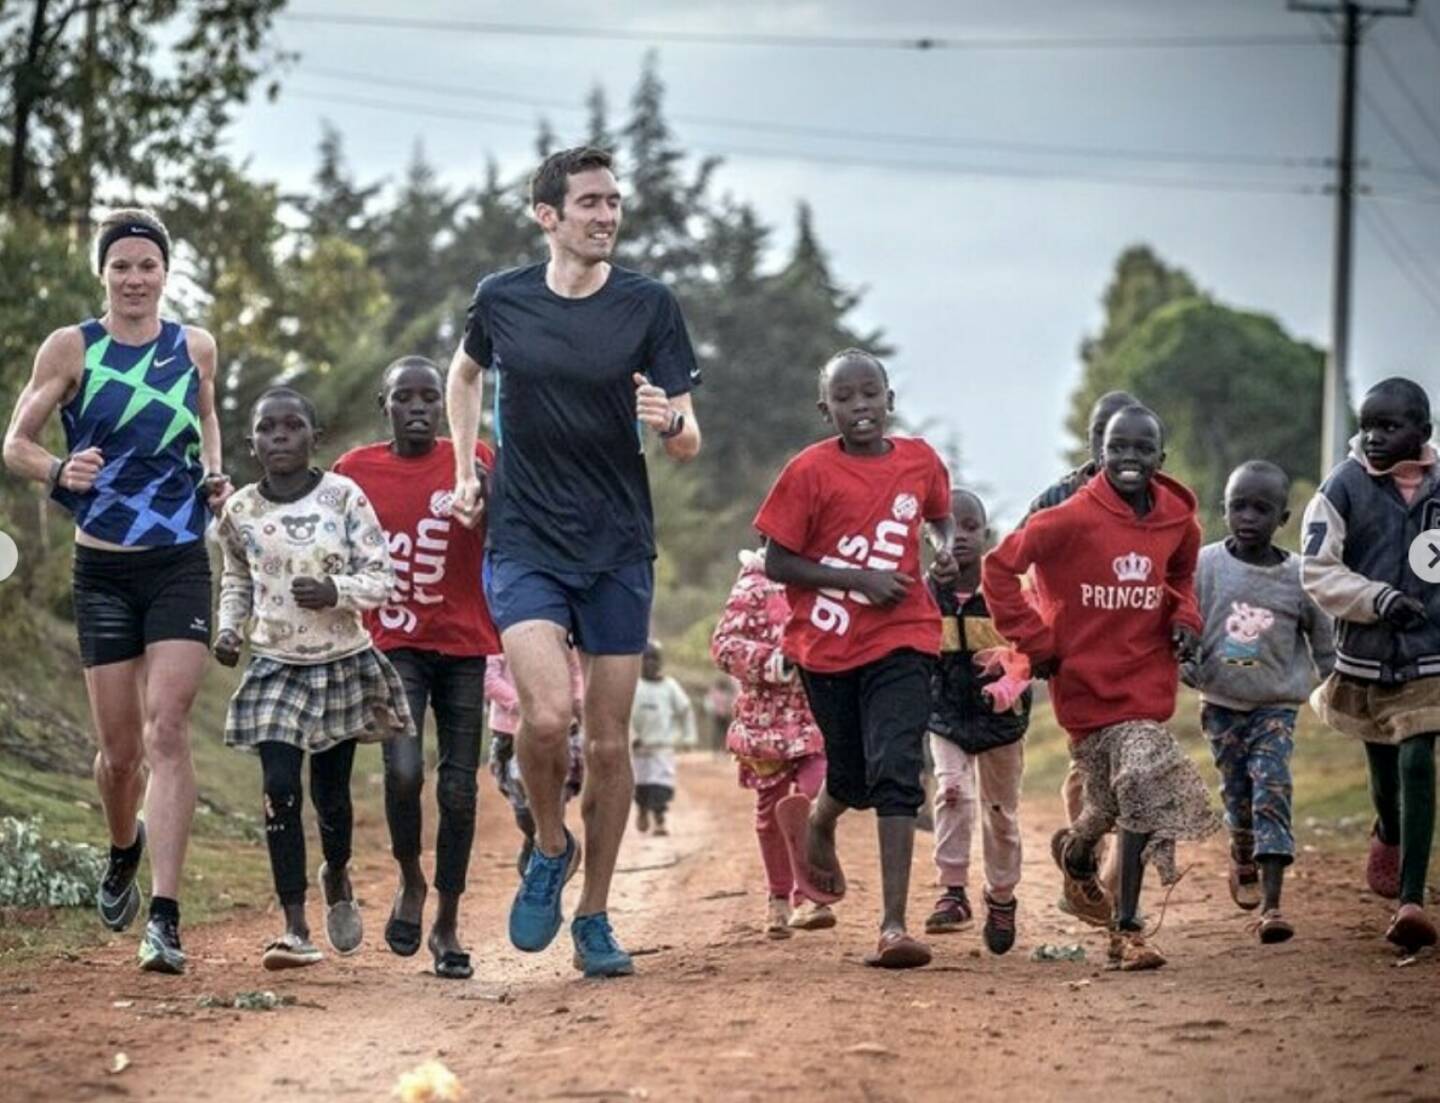 Tanja Stroschneider, Andreas Vojta Run Kenia Afrika Yes (c) Wilhelm Lilge
Von: https://www.instagram.com/tstroschneidertri// (Tanja Stroschneider. Triathletin https://youtu.be/8mBNx4YvAeI  http://www.sportgeschichte.at) 